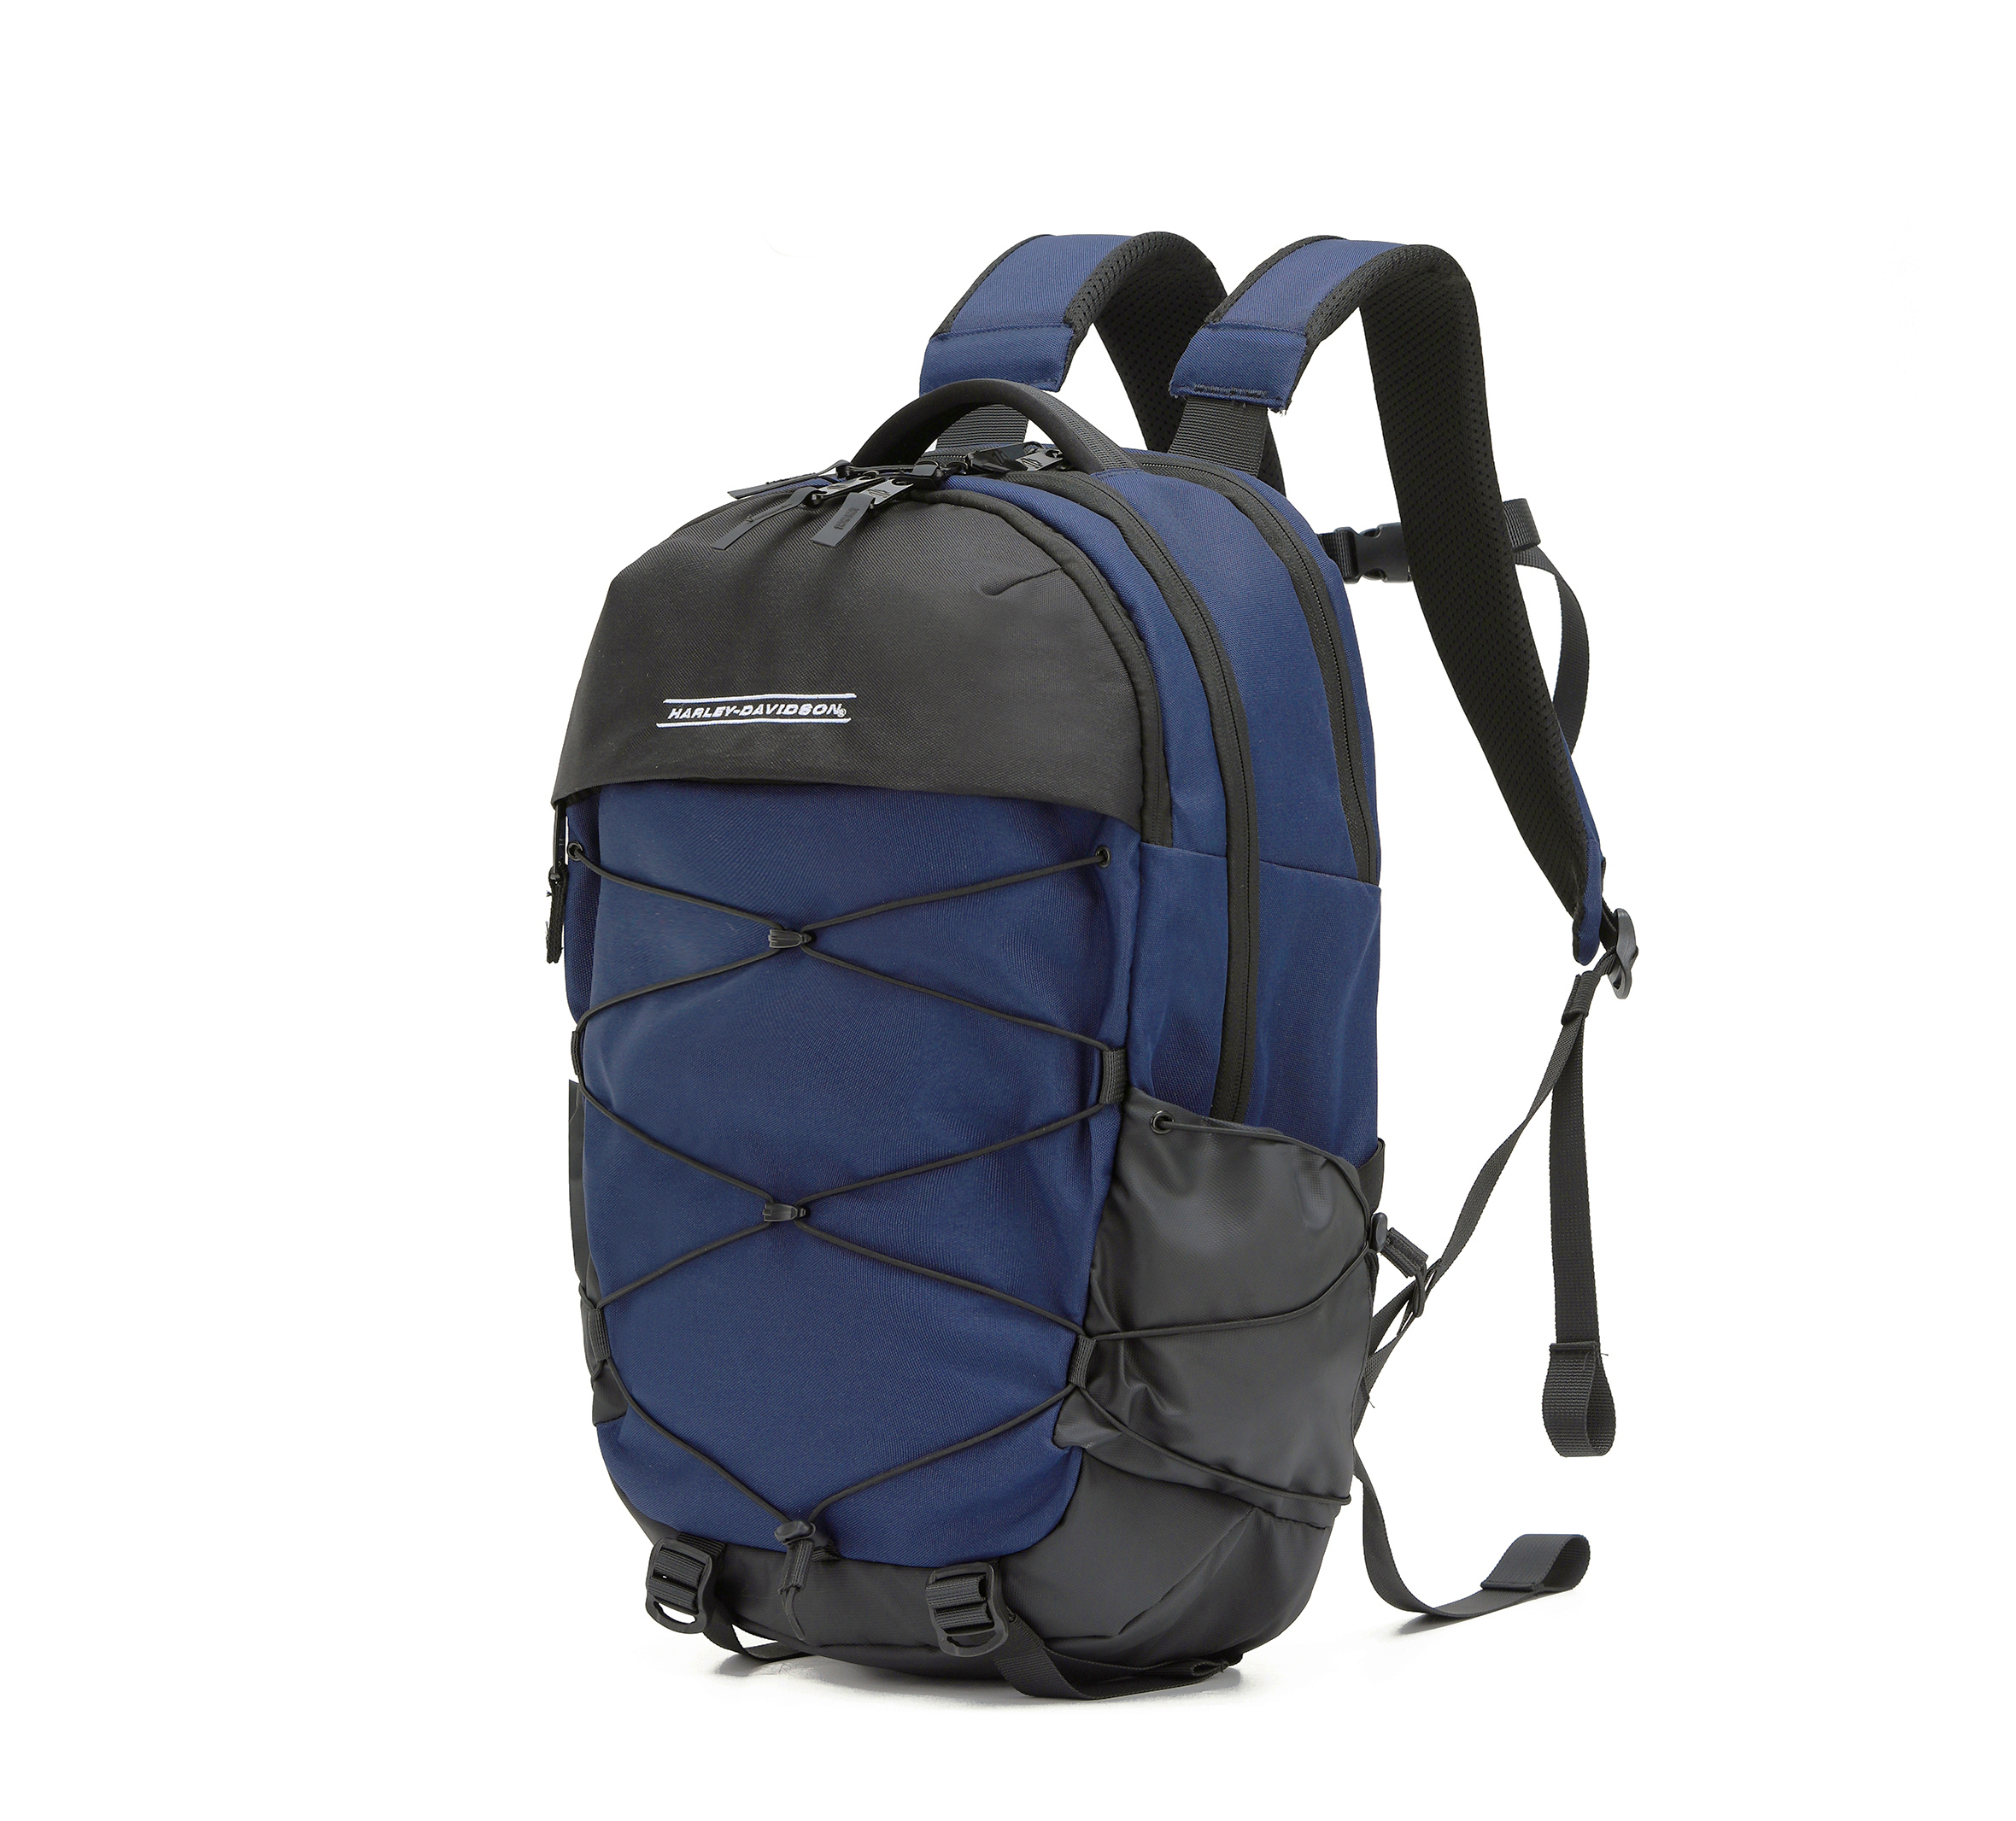 Nomad Backpack - Black | Harley-Davidson USA